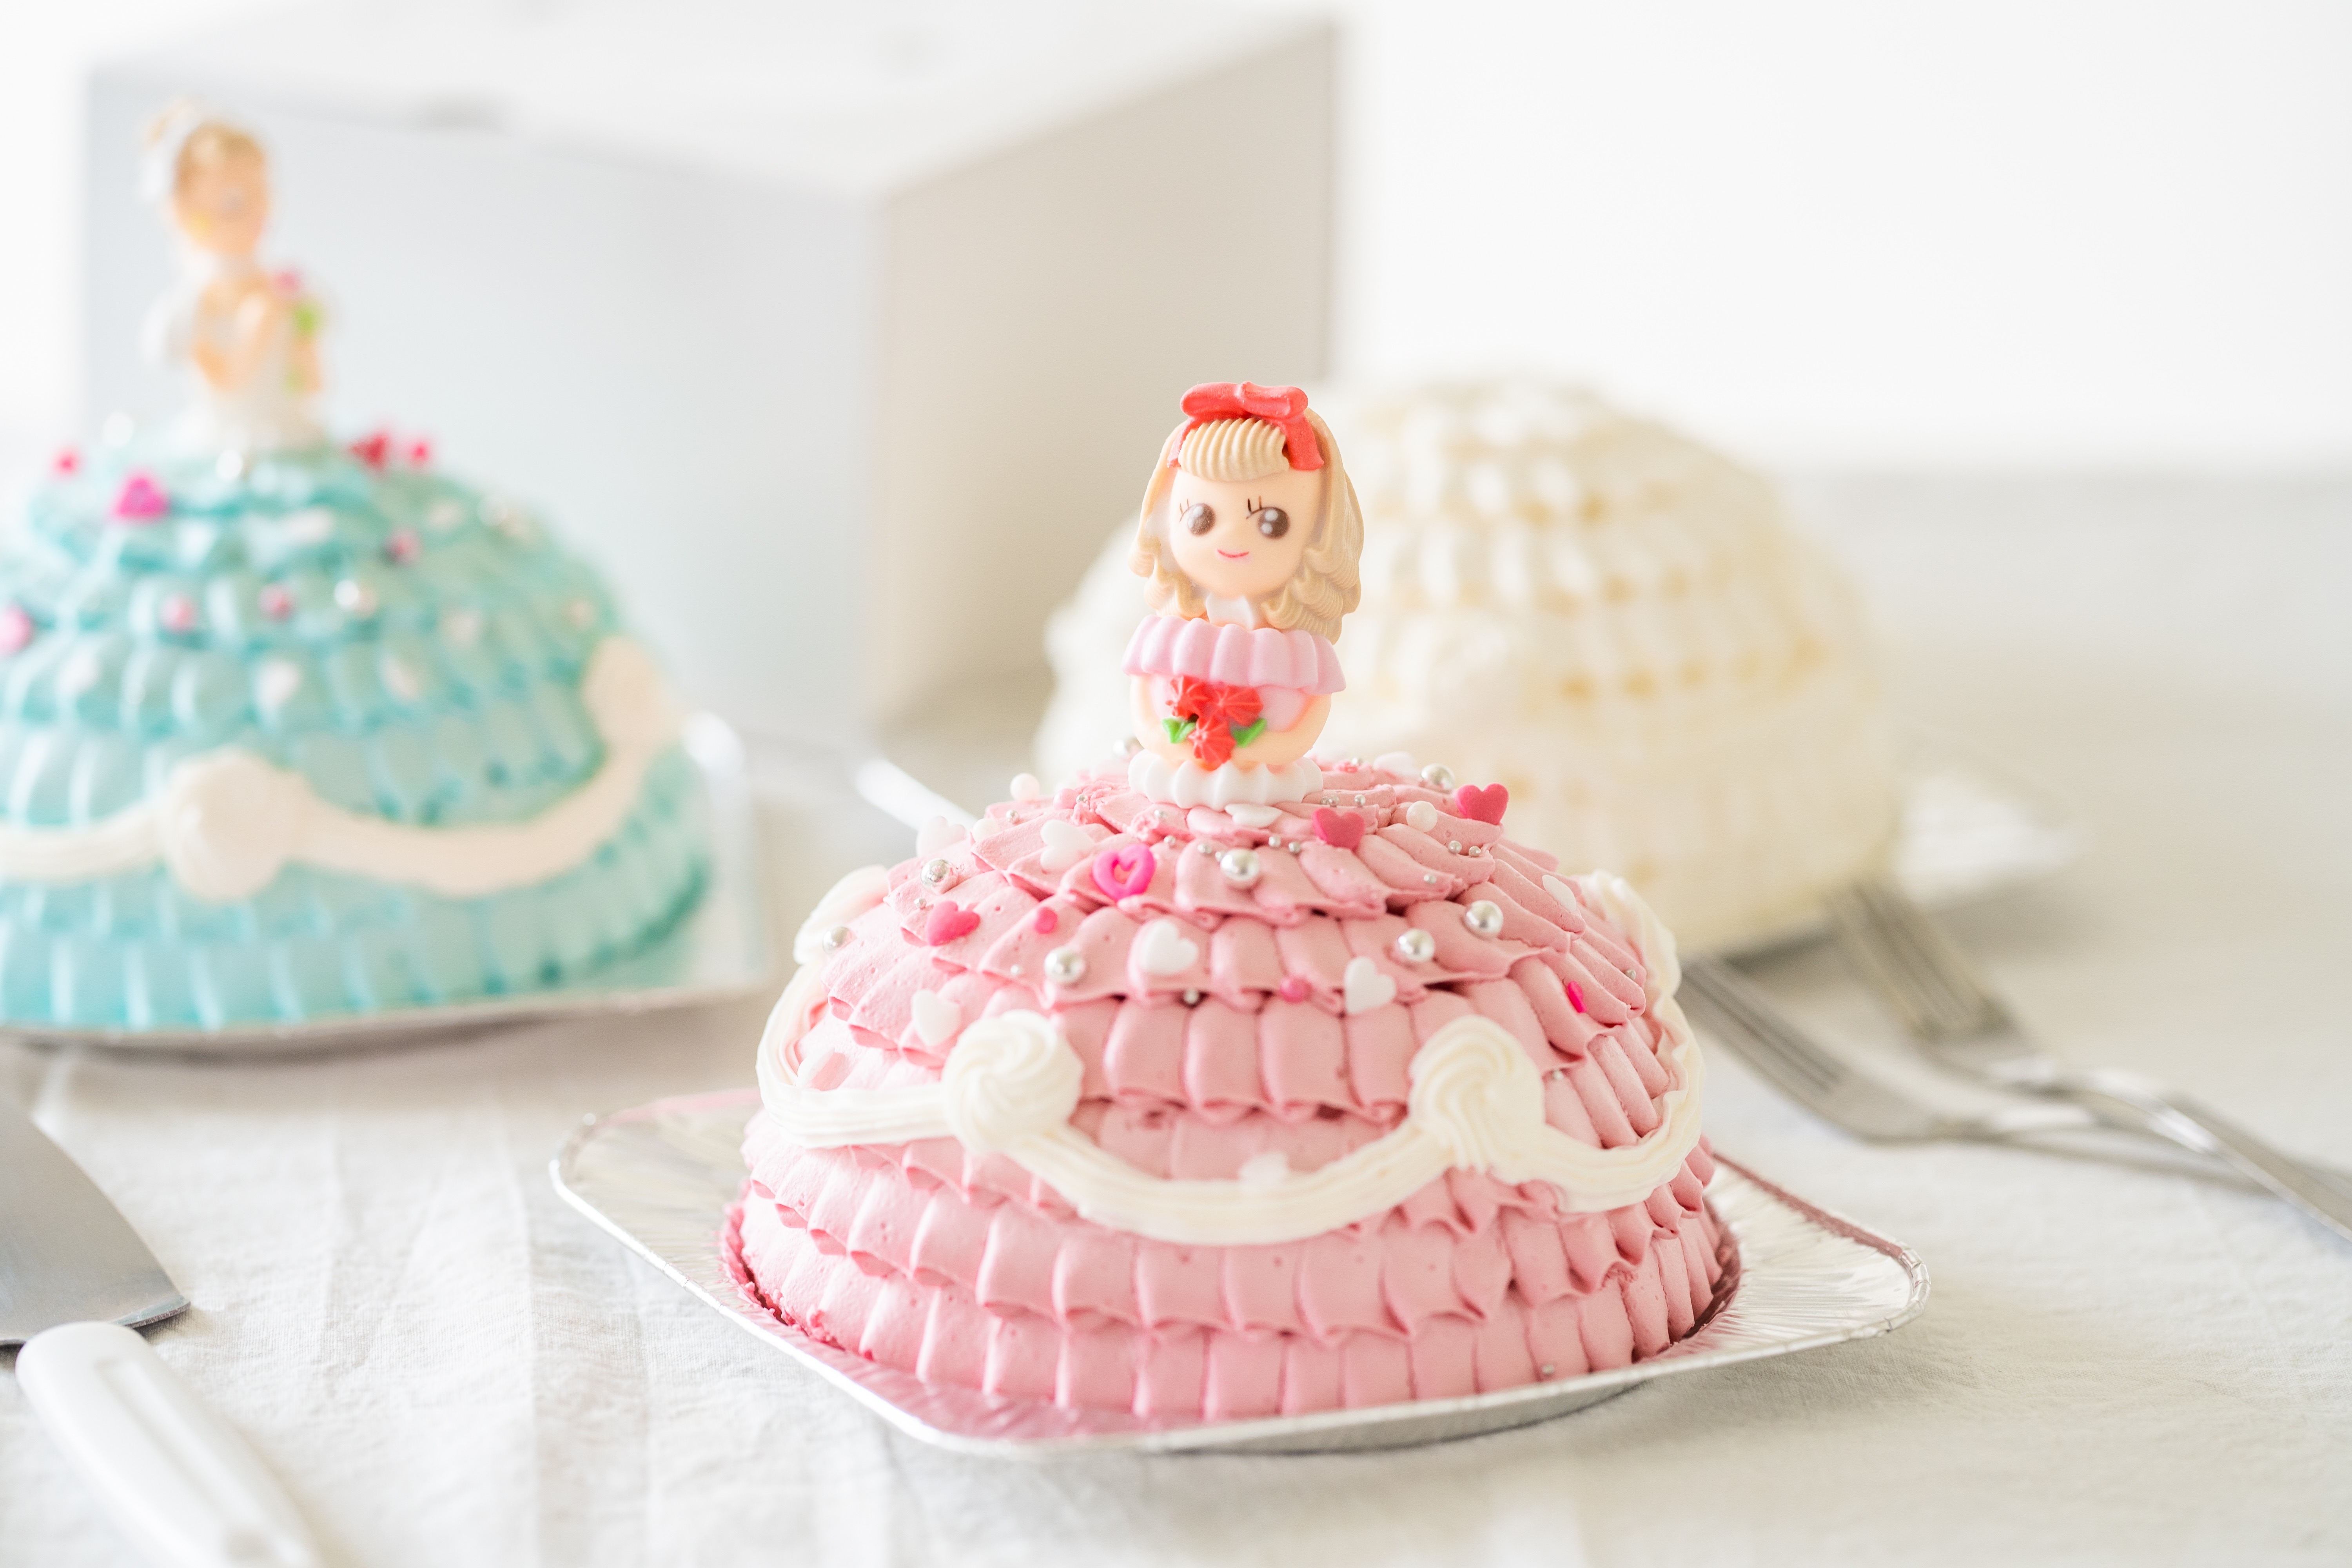 楽天市場 世界に一つだけ 自分で飾り付けのできる プリンセスケーキ 5号 送料無料 お人形が選べます 誕生日ケーキ バースデーケーキ ドールケーキ 誕生日ケーキのお店ケベック